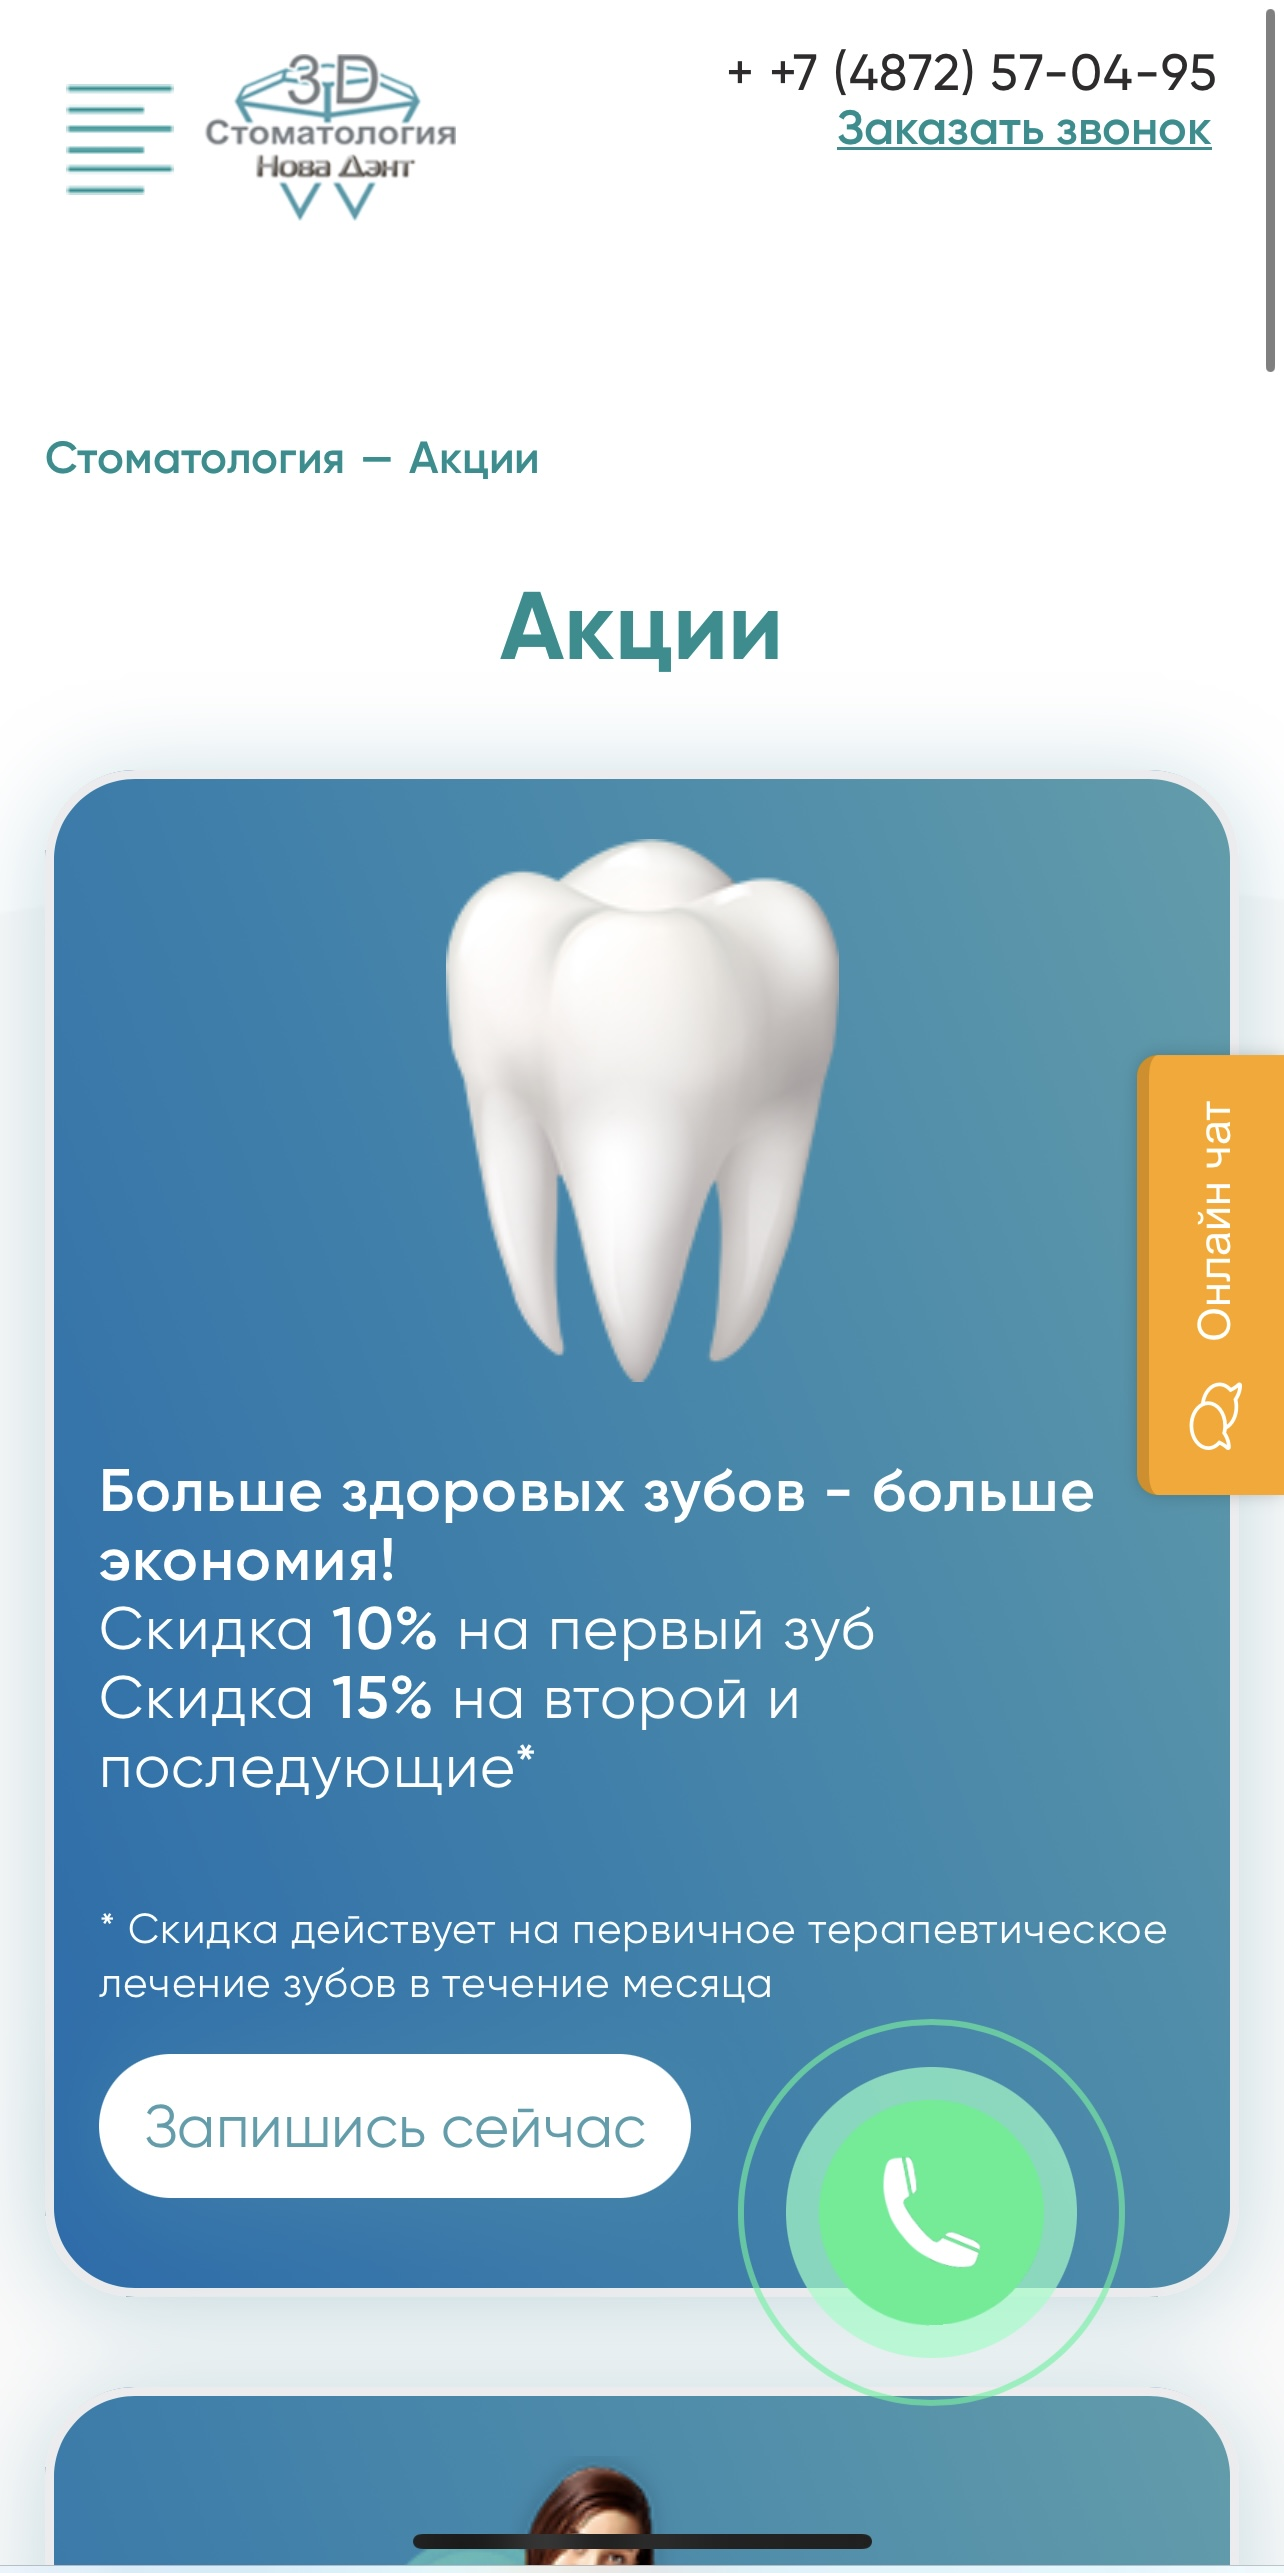 Создание и продвижение сайта стоматологической клиники / Страница акций